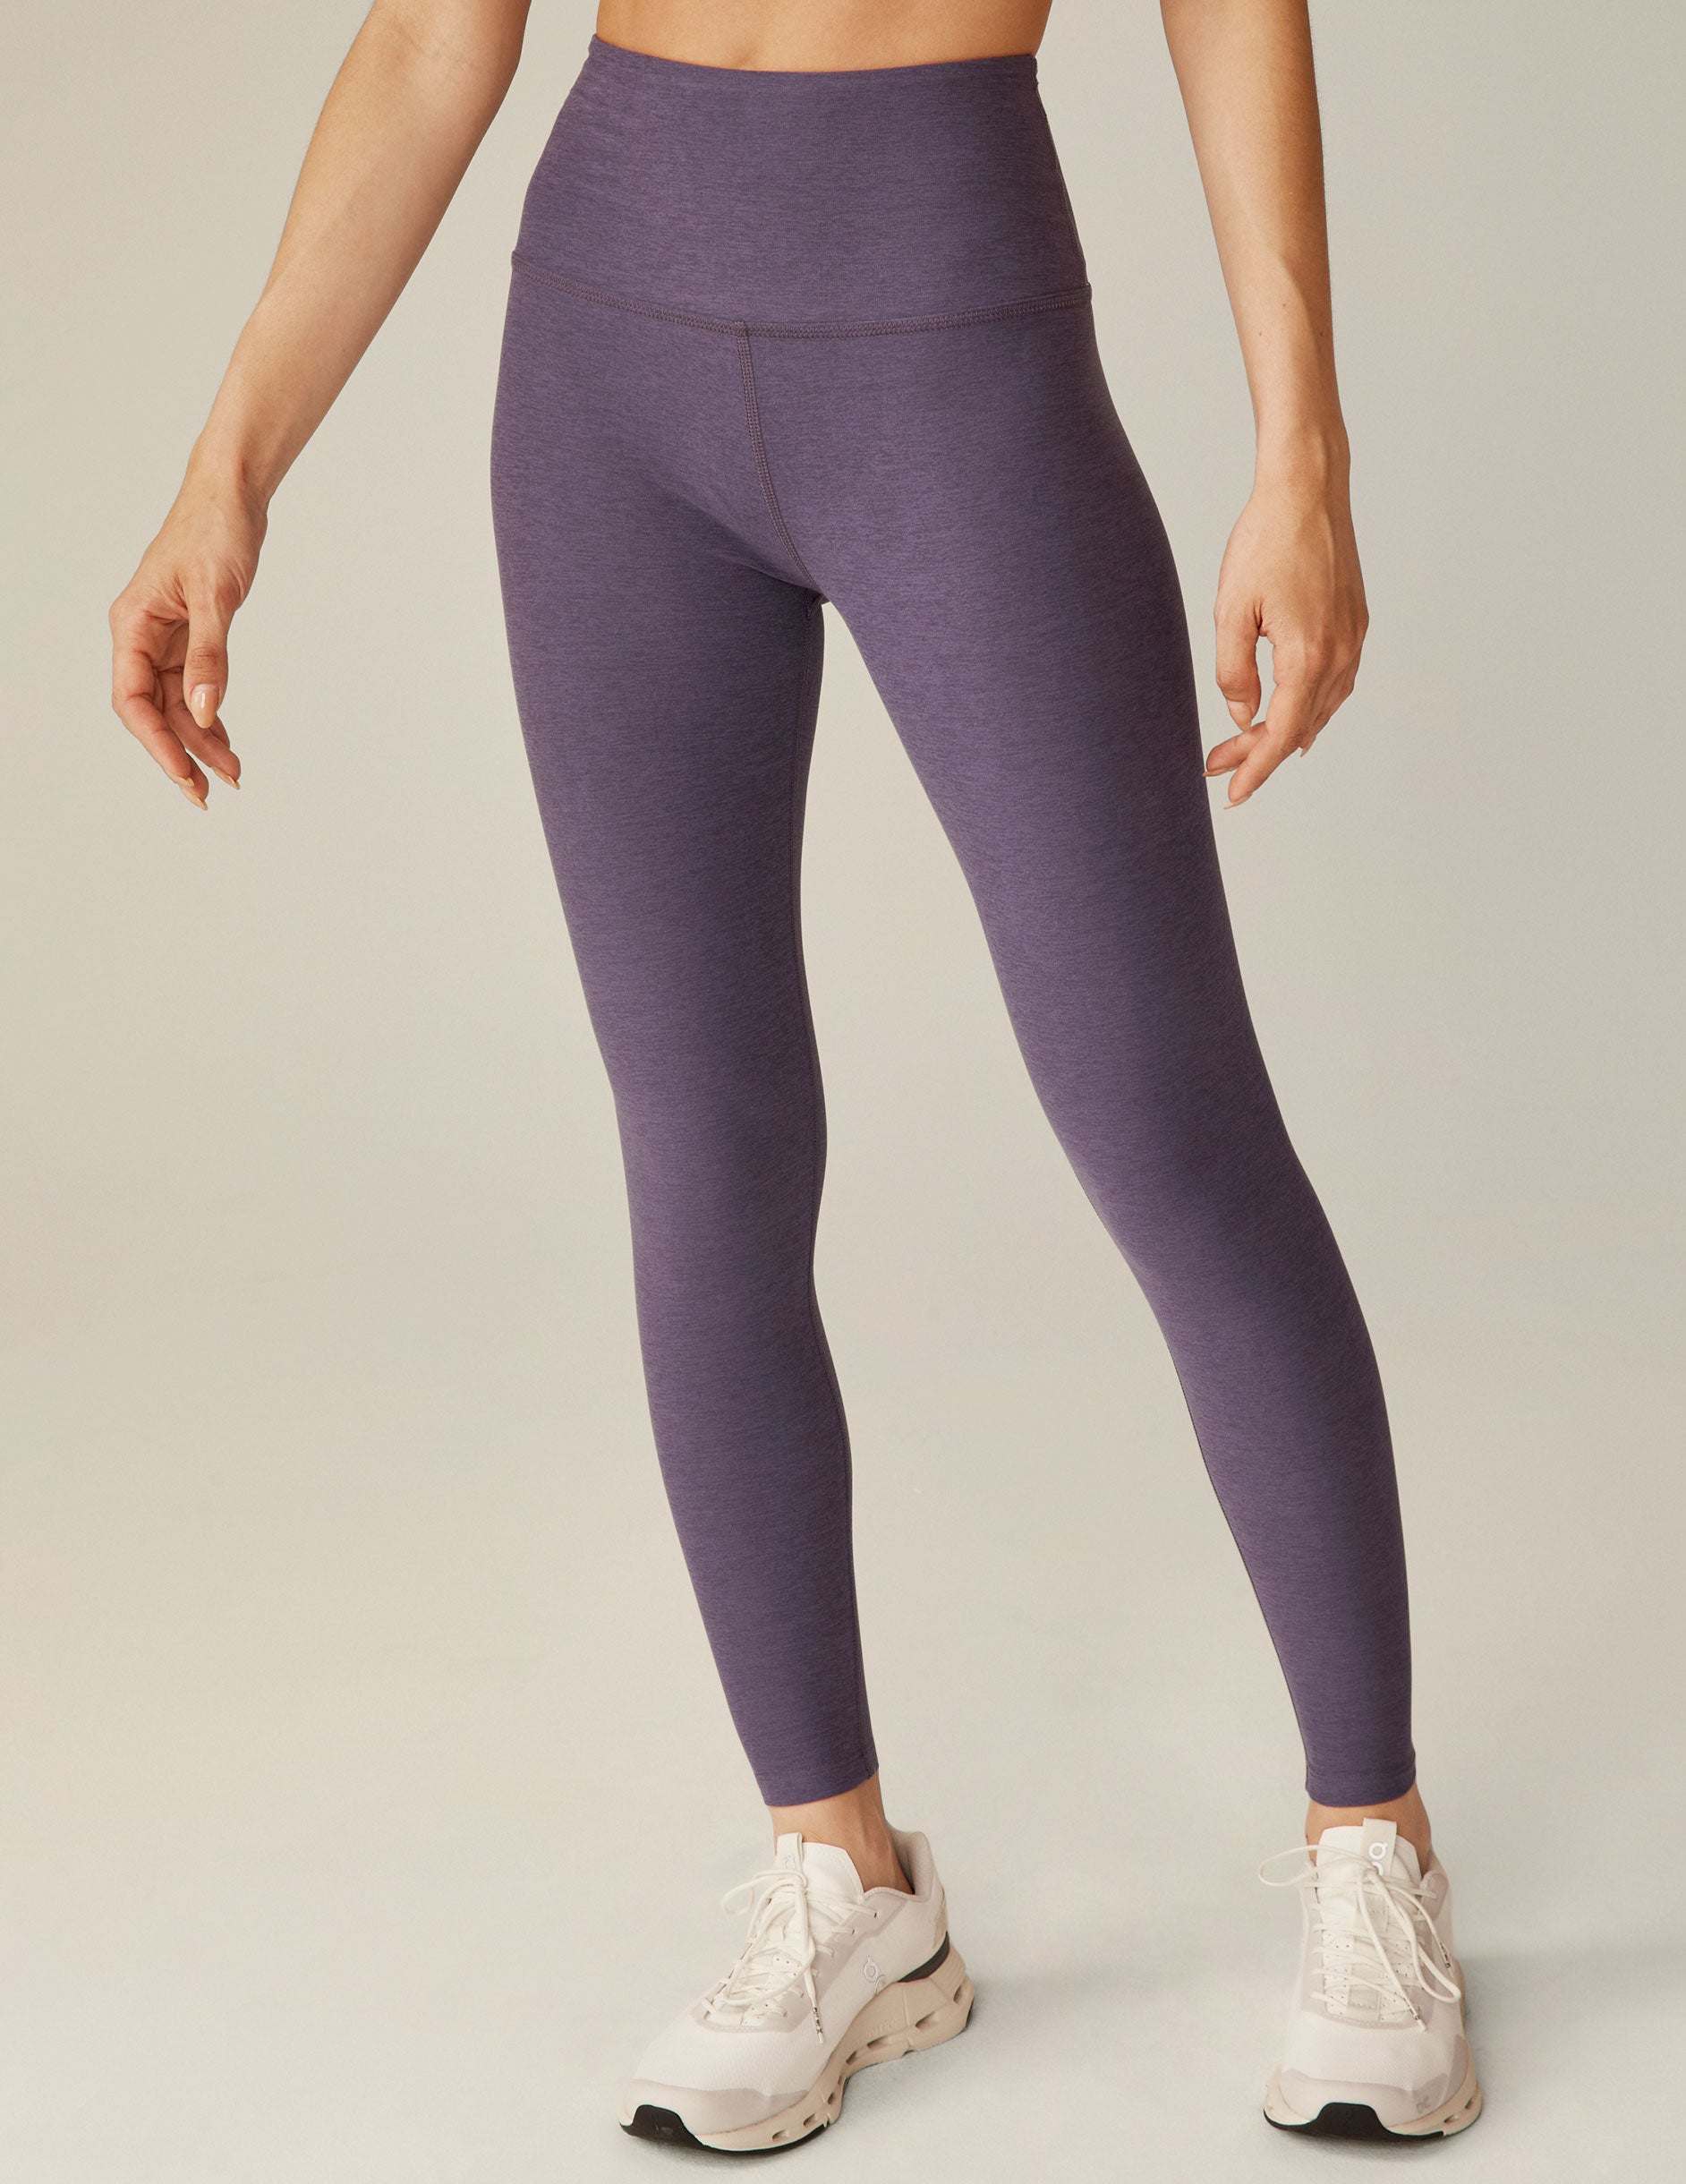 purple high-waisted midi leggings. 